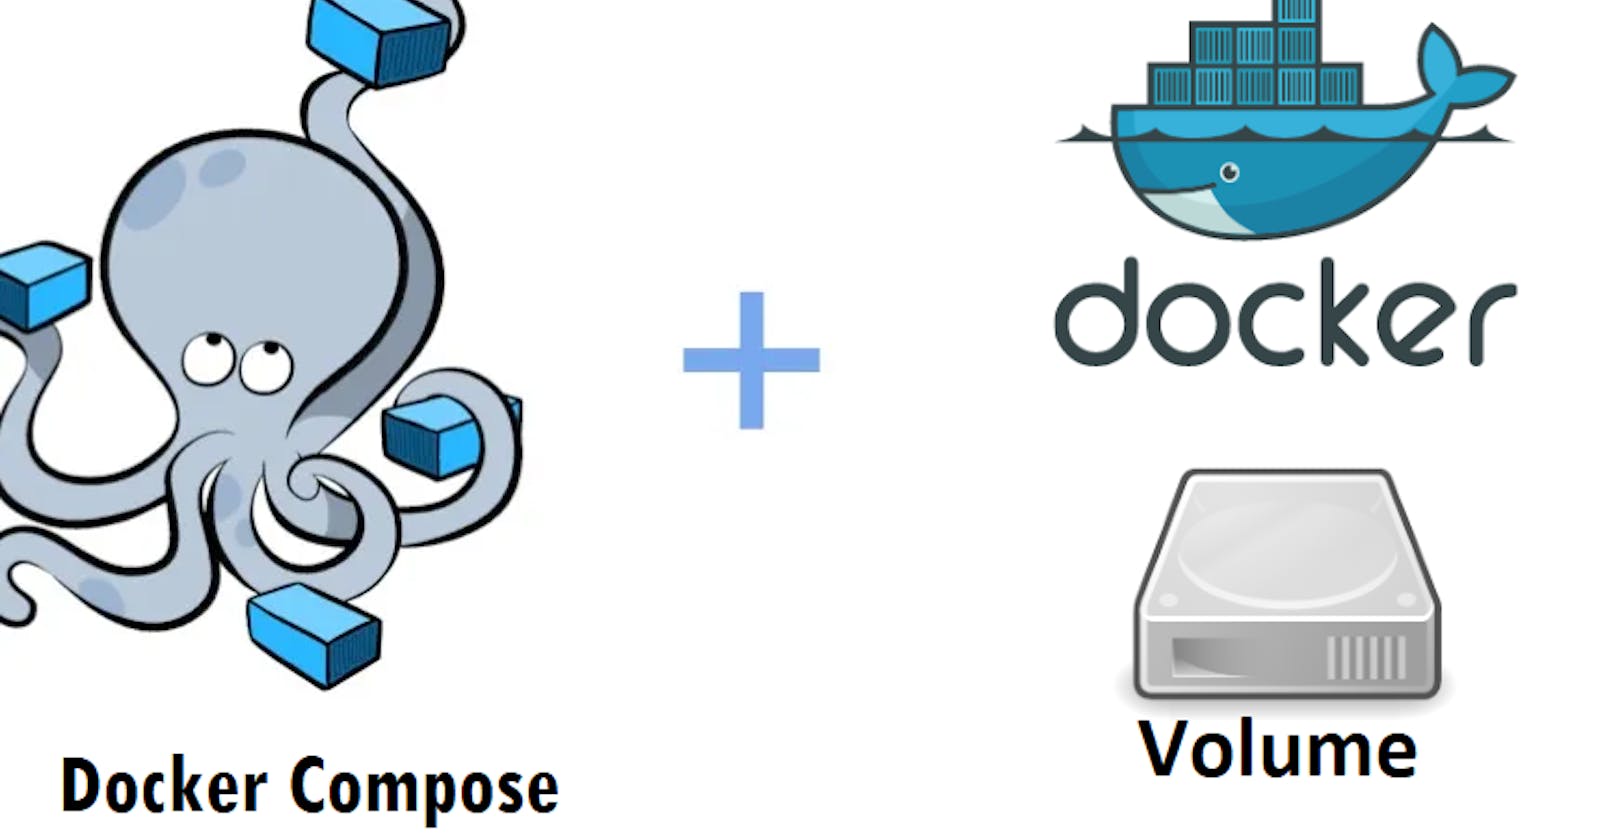 Docker Volume & Docker Compose